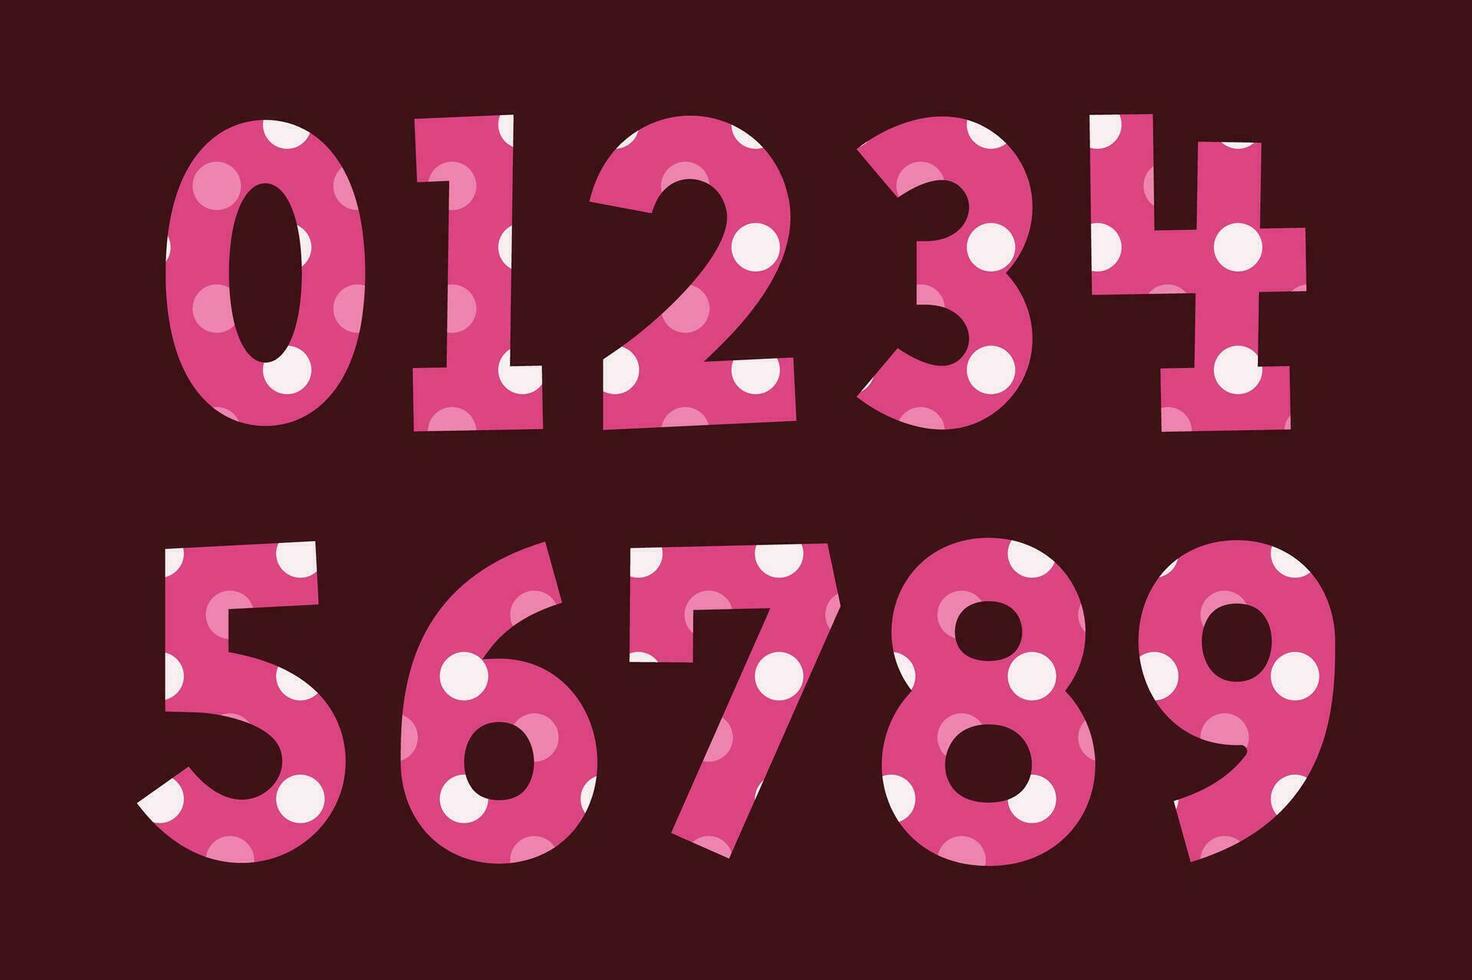 veelzijdig verzameling van roze dots getallen voor divers toepassingen vector